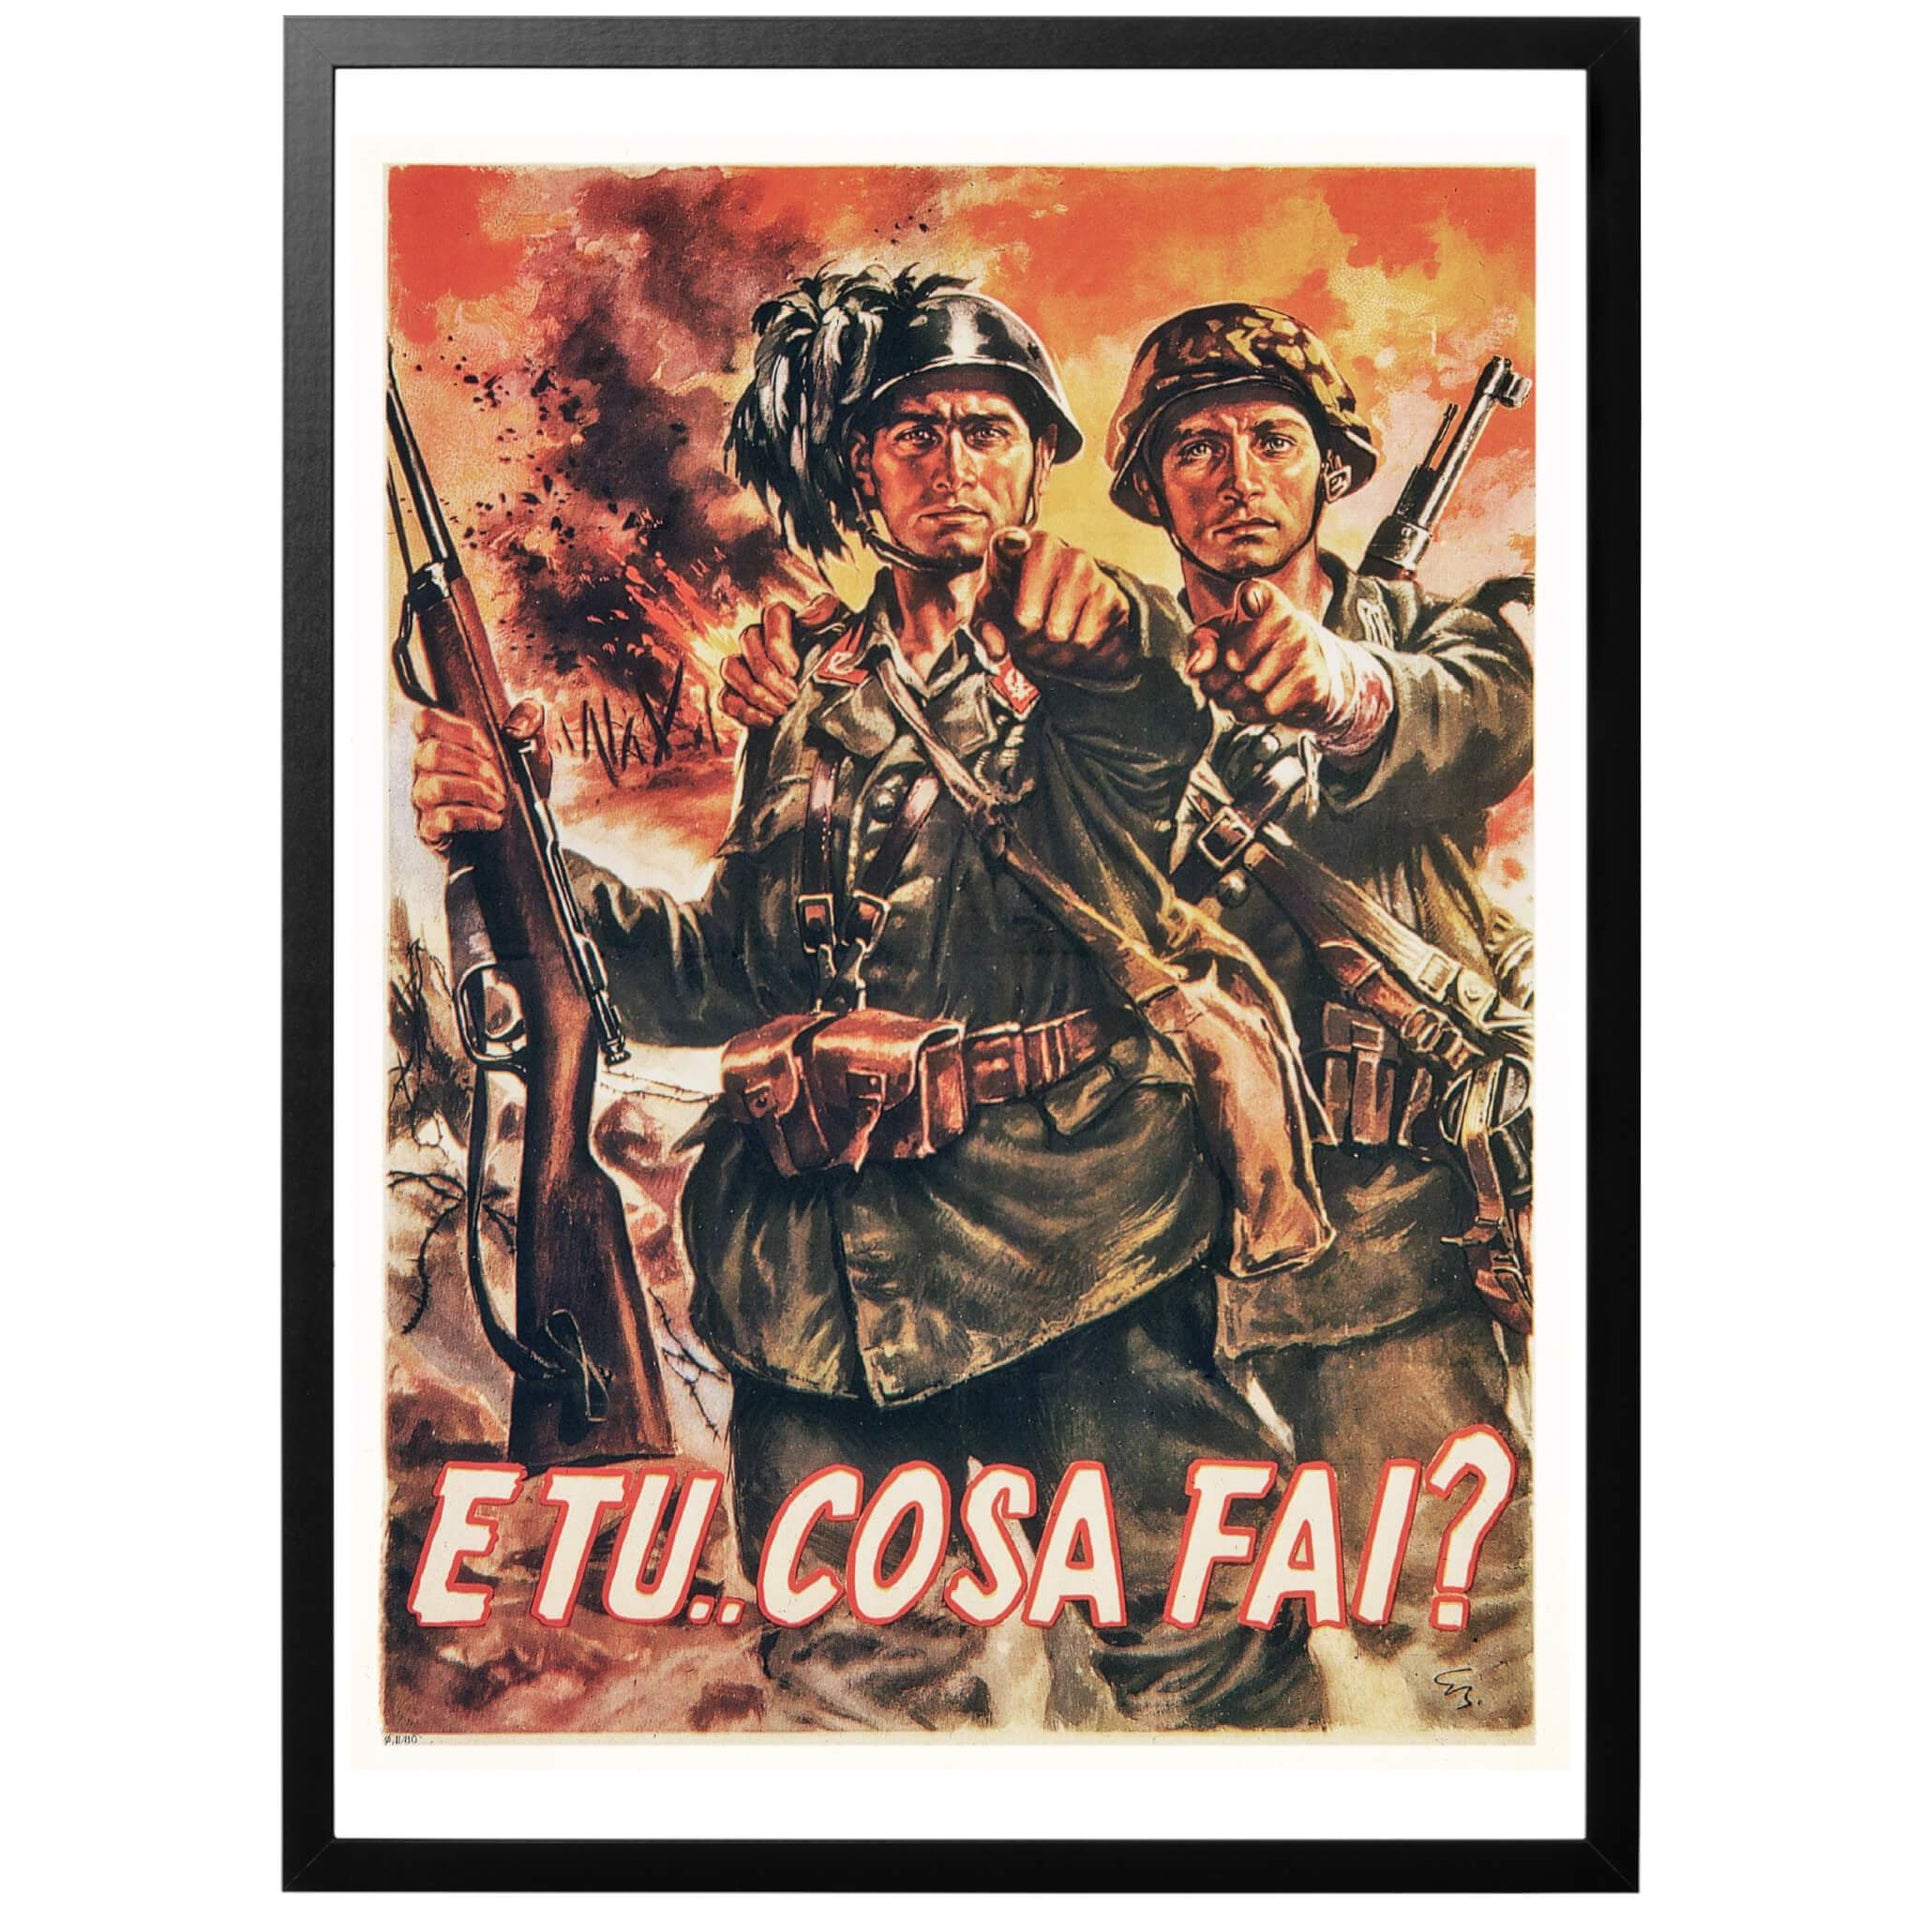 Italiensk WWII propagandaposter - Italiensk propagandaposter från tiden för Salórepubliken, då Italien delats i två delar med ett allierat syd och ett fasciststyrt nord. Allierade styrkor avancerade långsamt norrut, hindrade av italienska och tyska styrkor som gjorde ett våldsamt motstånd.